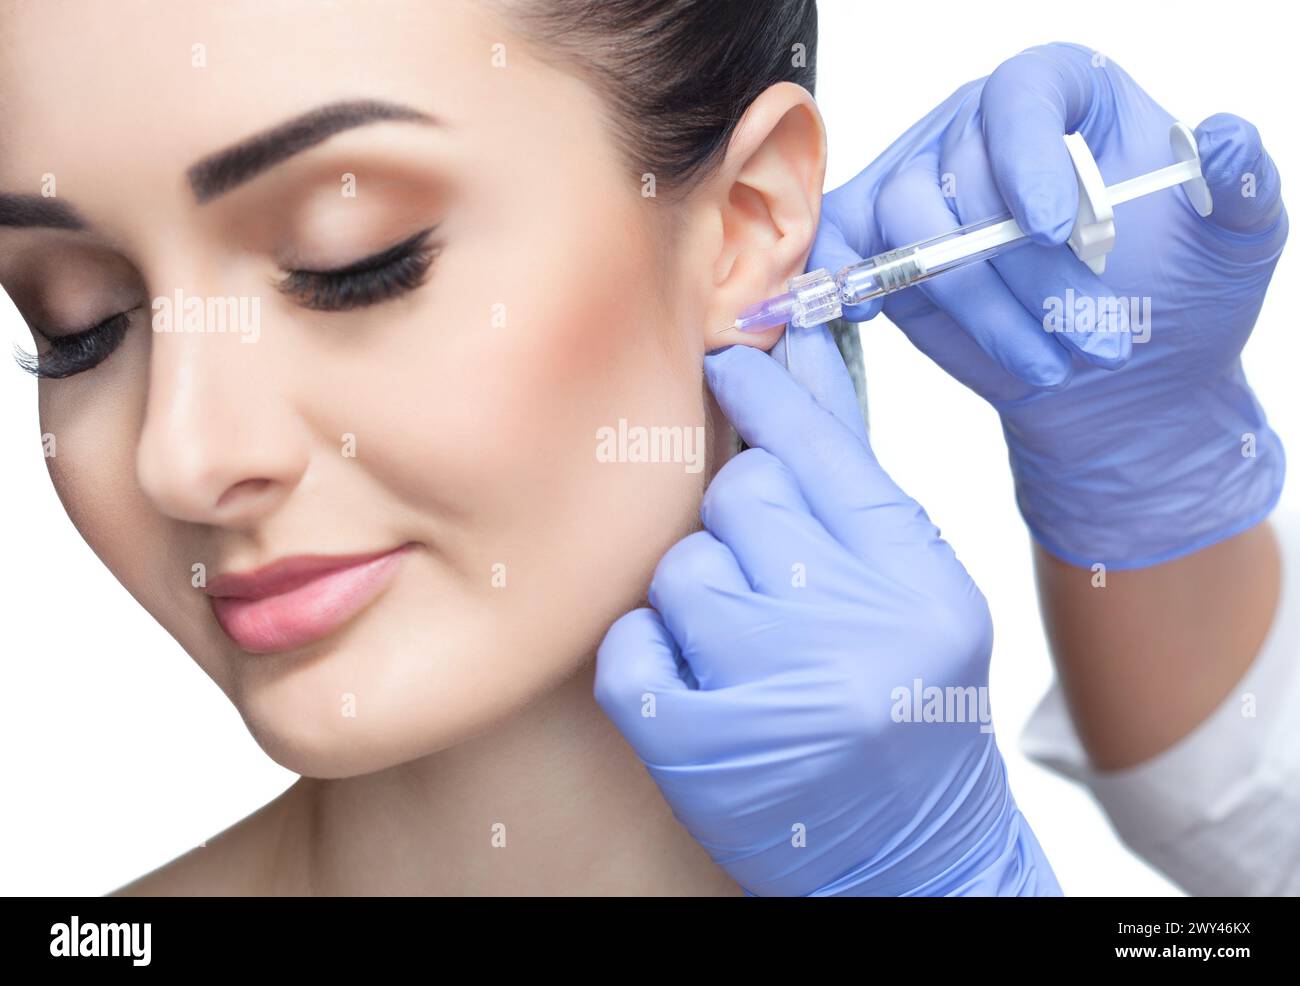 Der Arzt Kosmetikologe führt das verjüngende Gesichtsinjektionsverfahren zur Glättung von Falten und gegen schlaffe Haut am Ohrläppchen von A durch Stockfoto